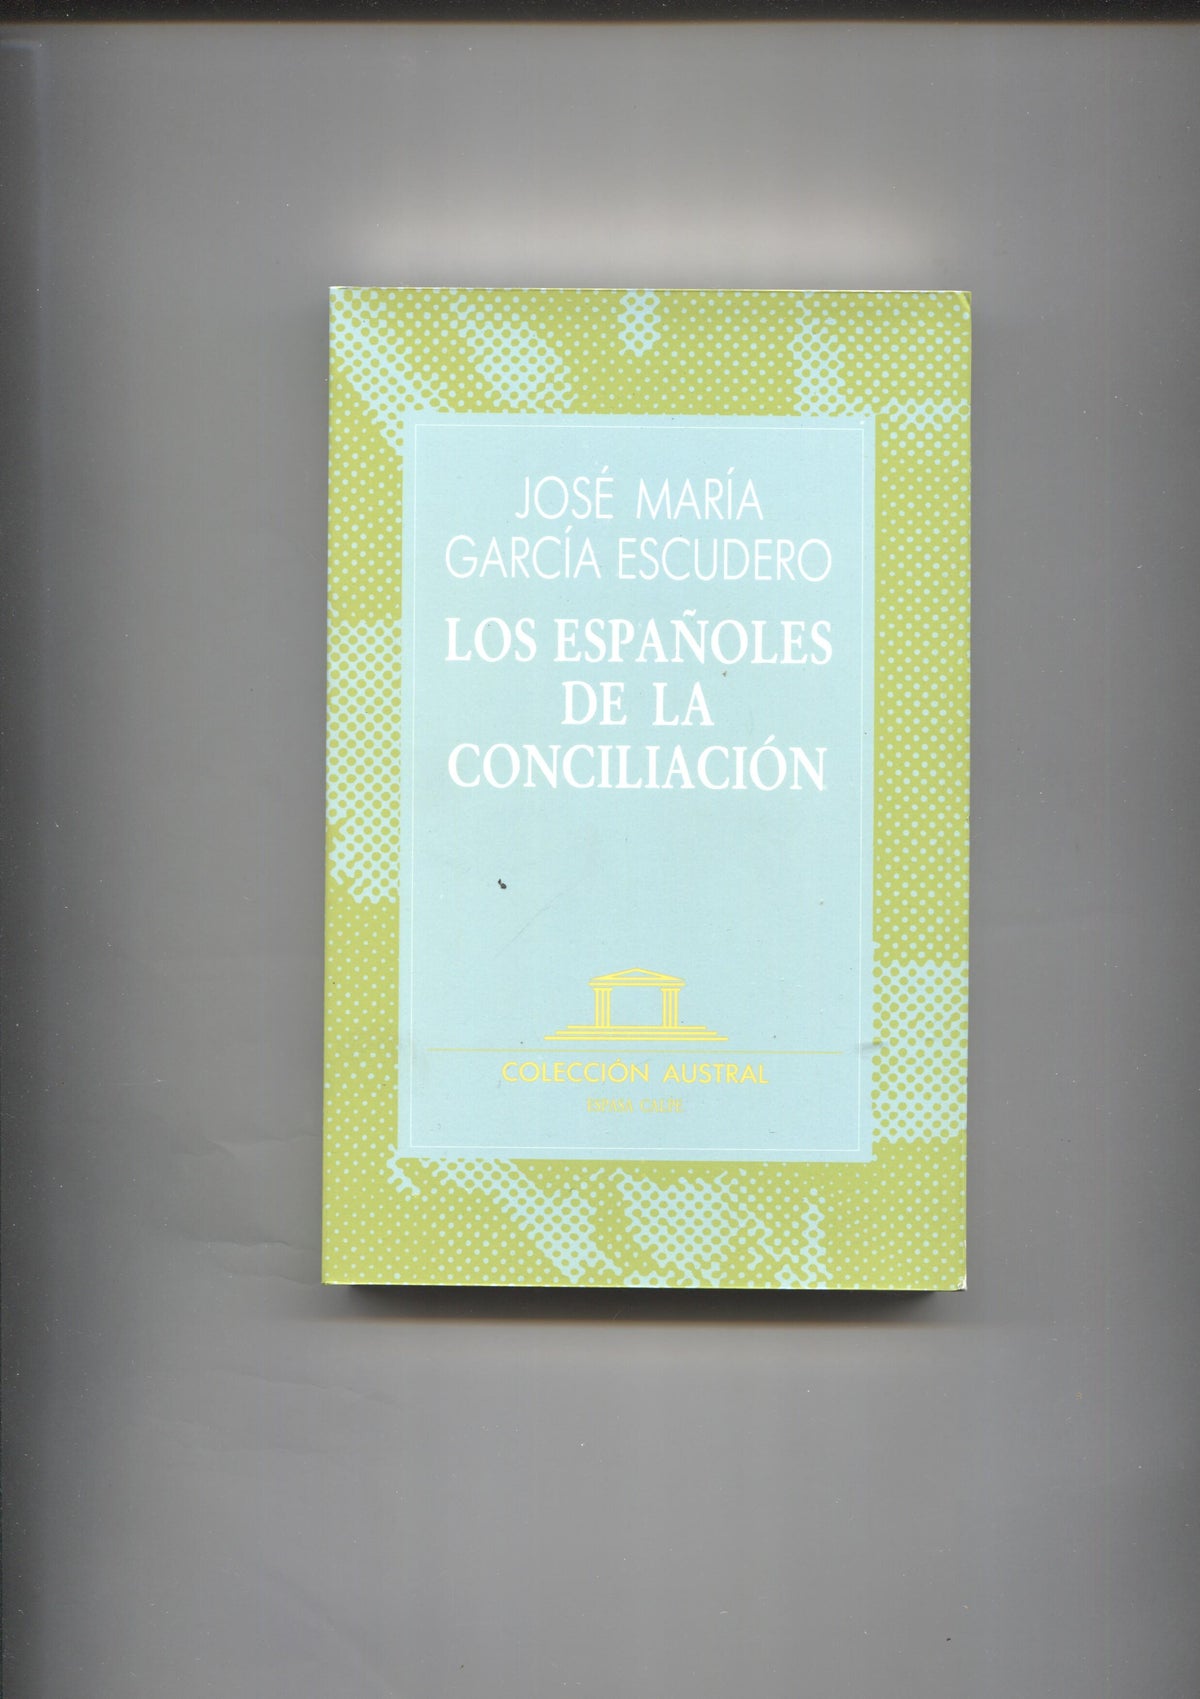 Austral numero 032: Los españoles de la conciliacion